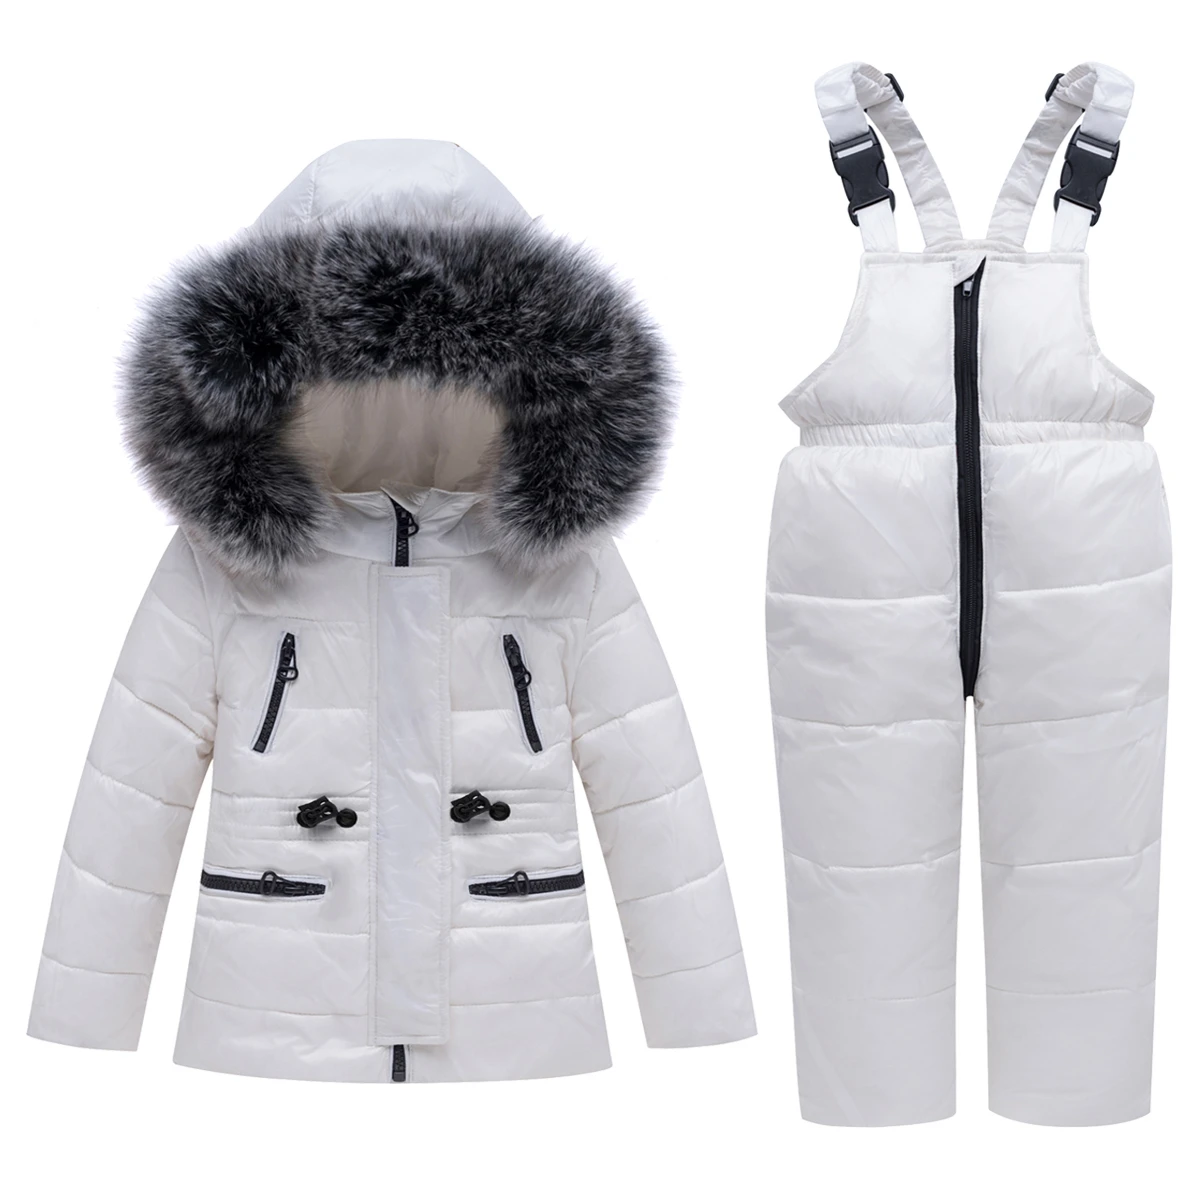 Новинка года, зимний комплект одежды для маленьких мальчиков и девочек на температуру до-30 градусов, пуховая куртка, пальто Зимние костюмы, детская парка детская одежда лыжные комбинезоны